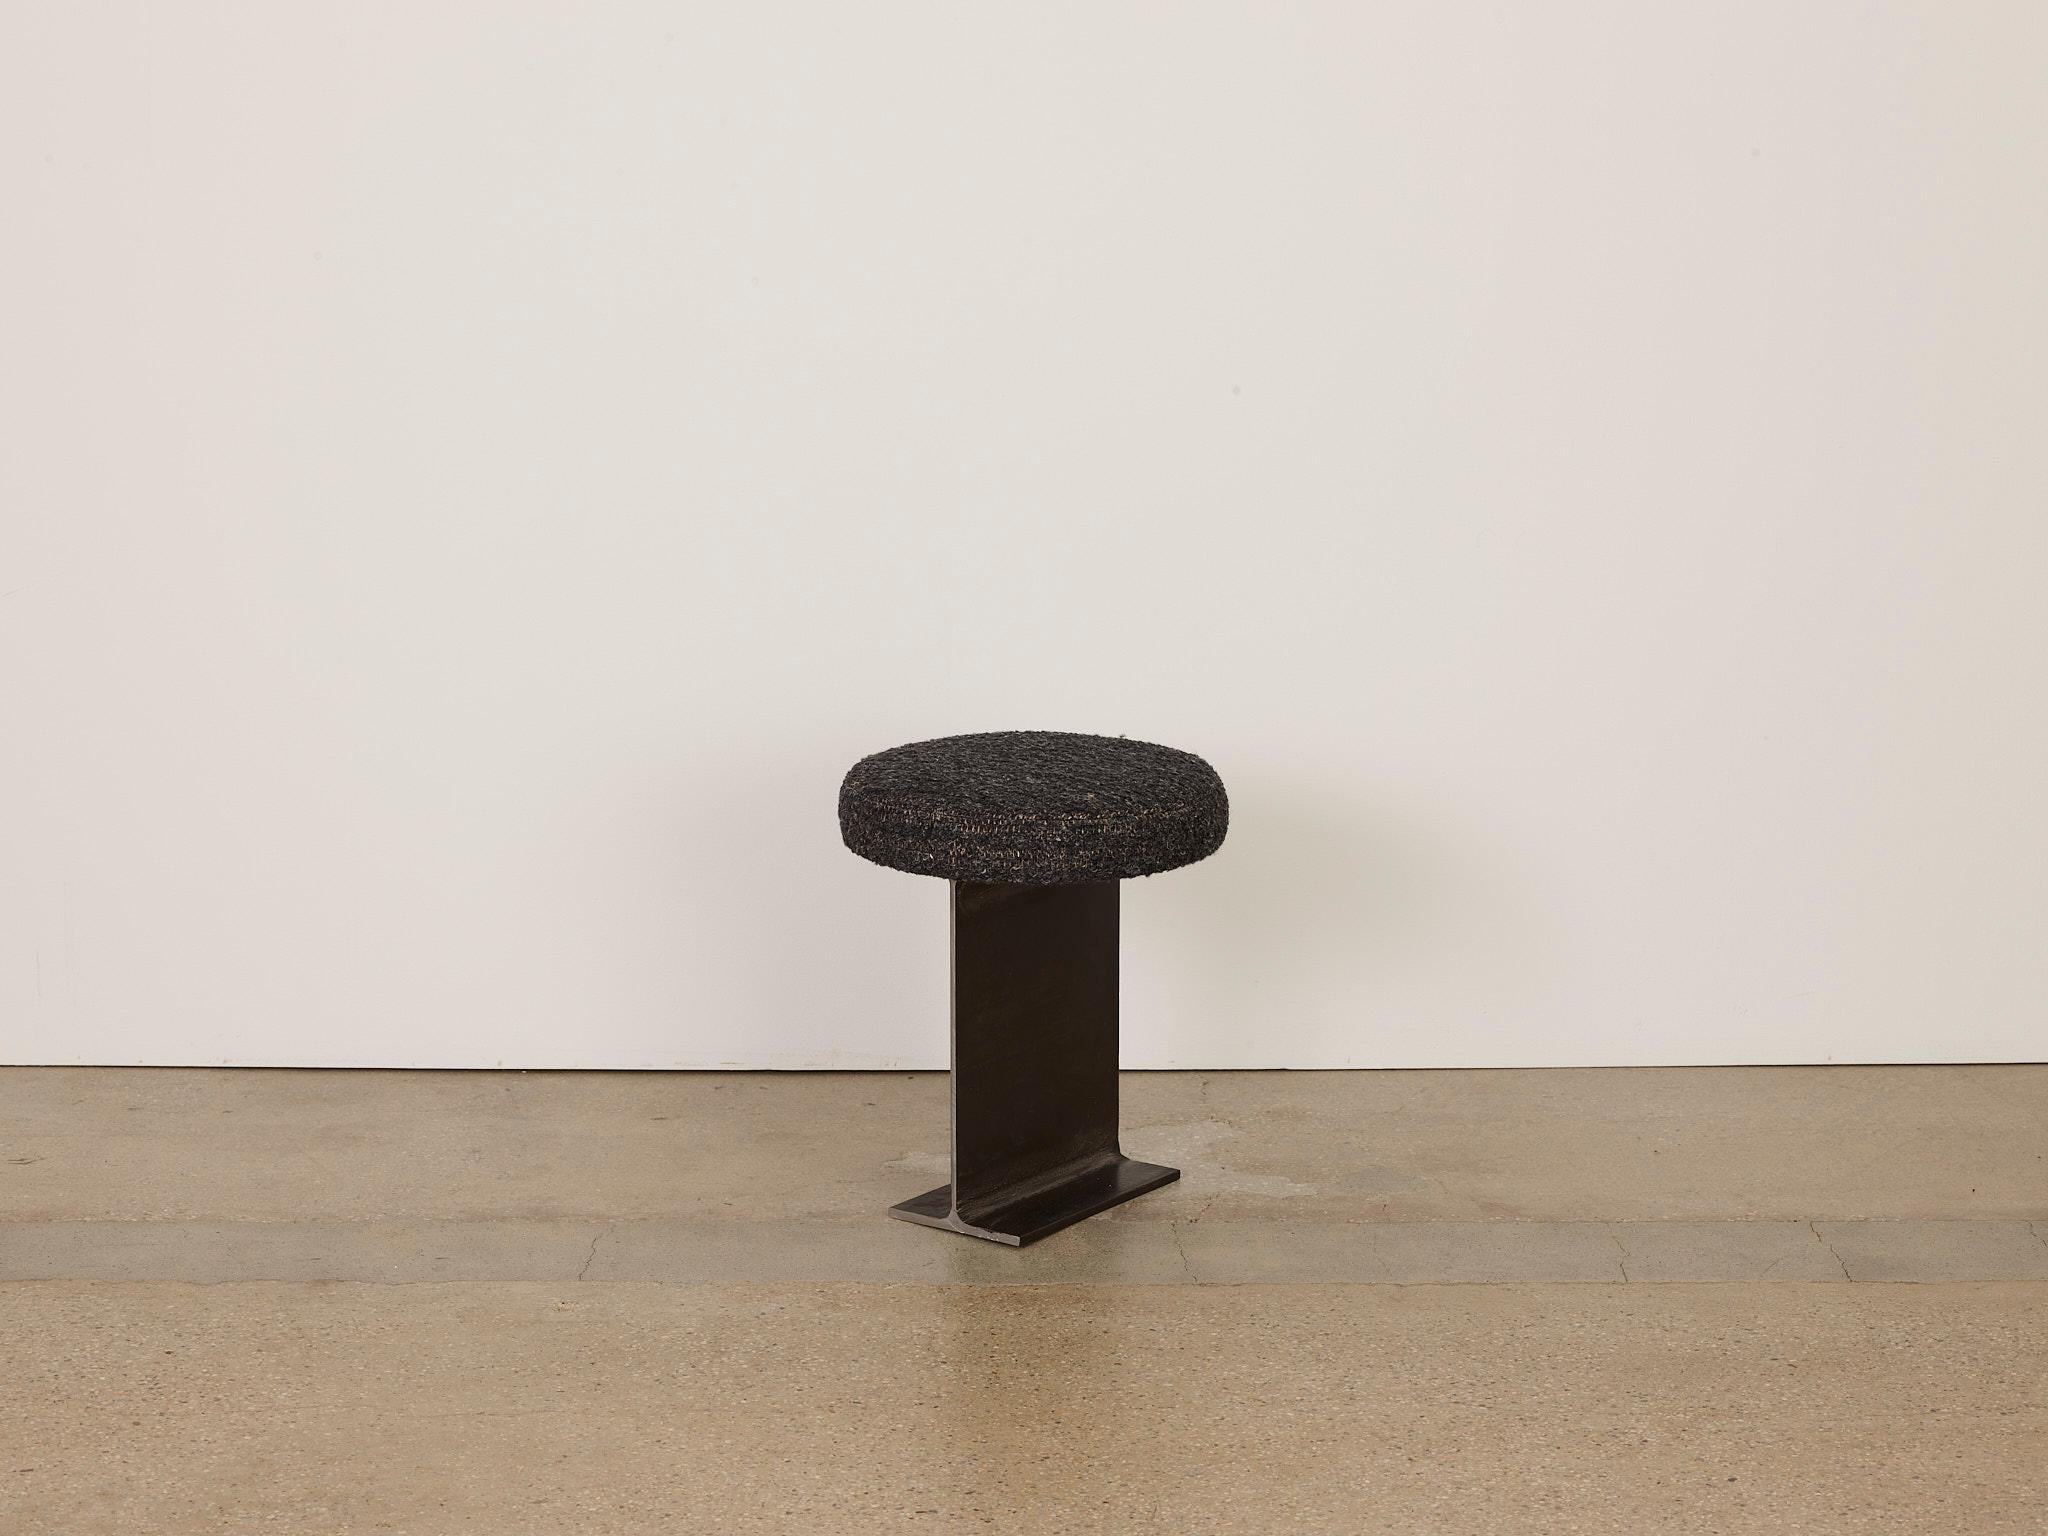 Trono pill schwarzer stuhl von Umberto Bellardi Ricci
Abmessungen: Durchmesser 16